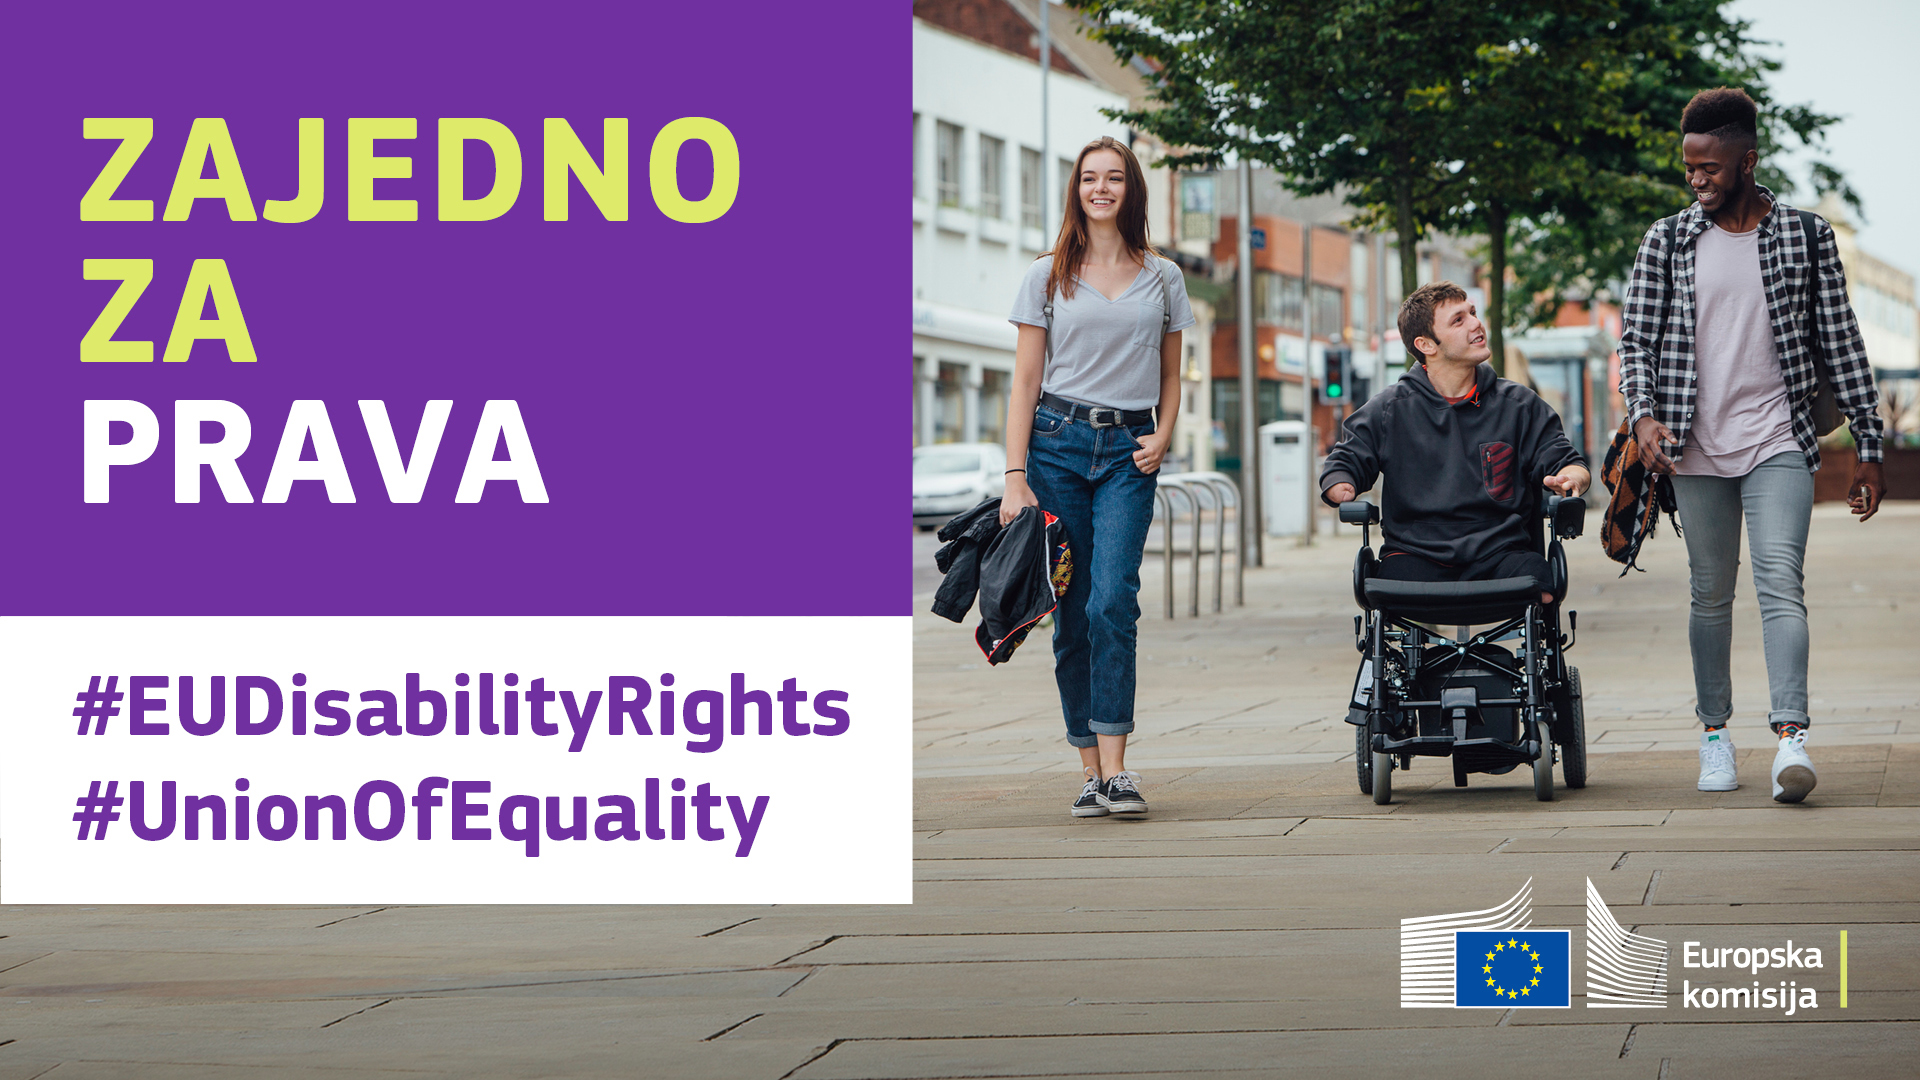 Troje mladih šeće gradom. Jedan od njih u invalidskim je kolicima. Tekst: zajedno za prava, #EUDisabilityRights, #UnionOfEquality.